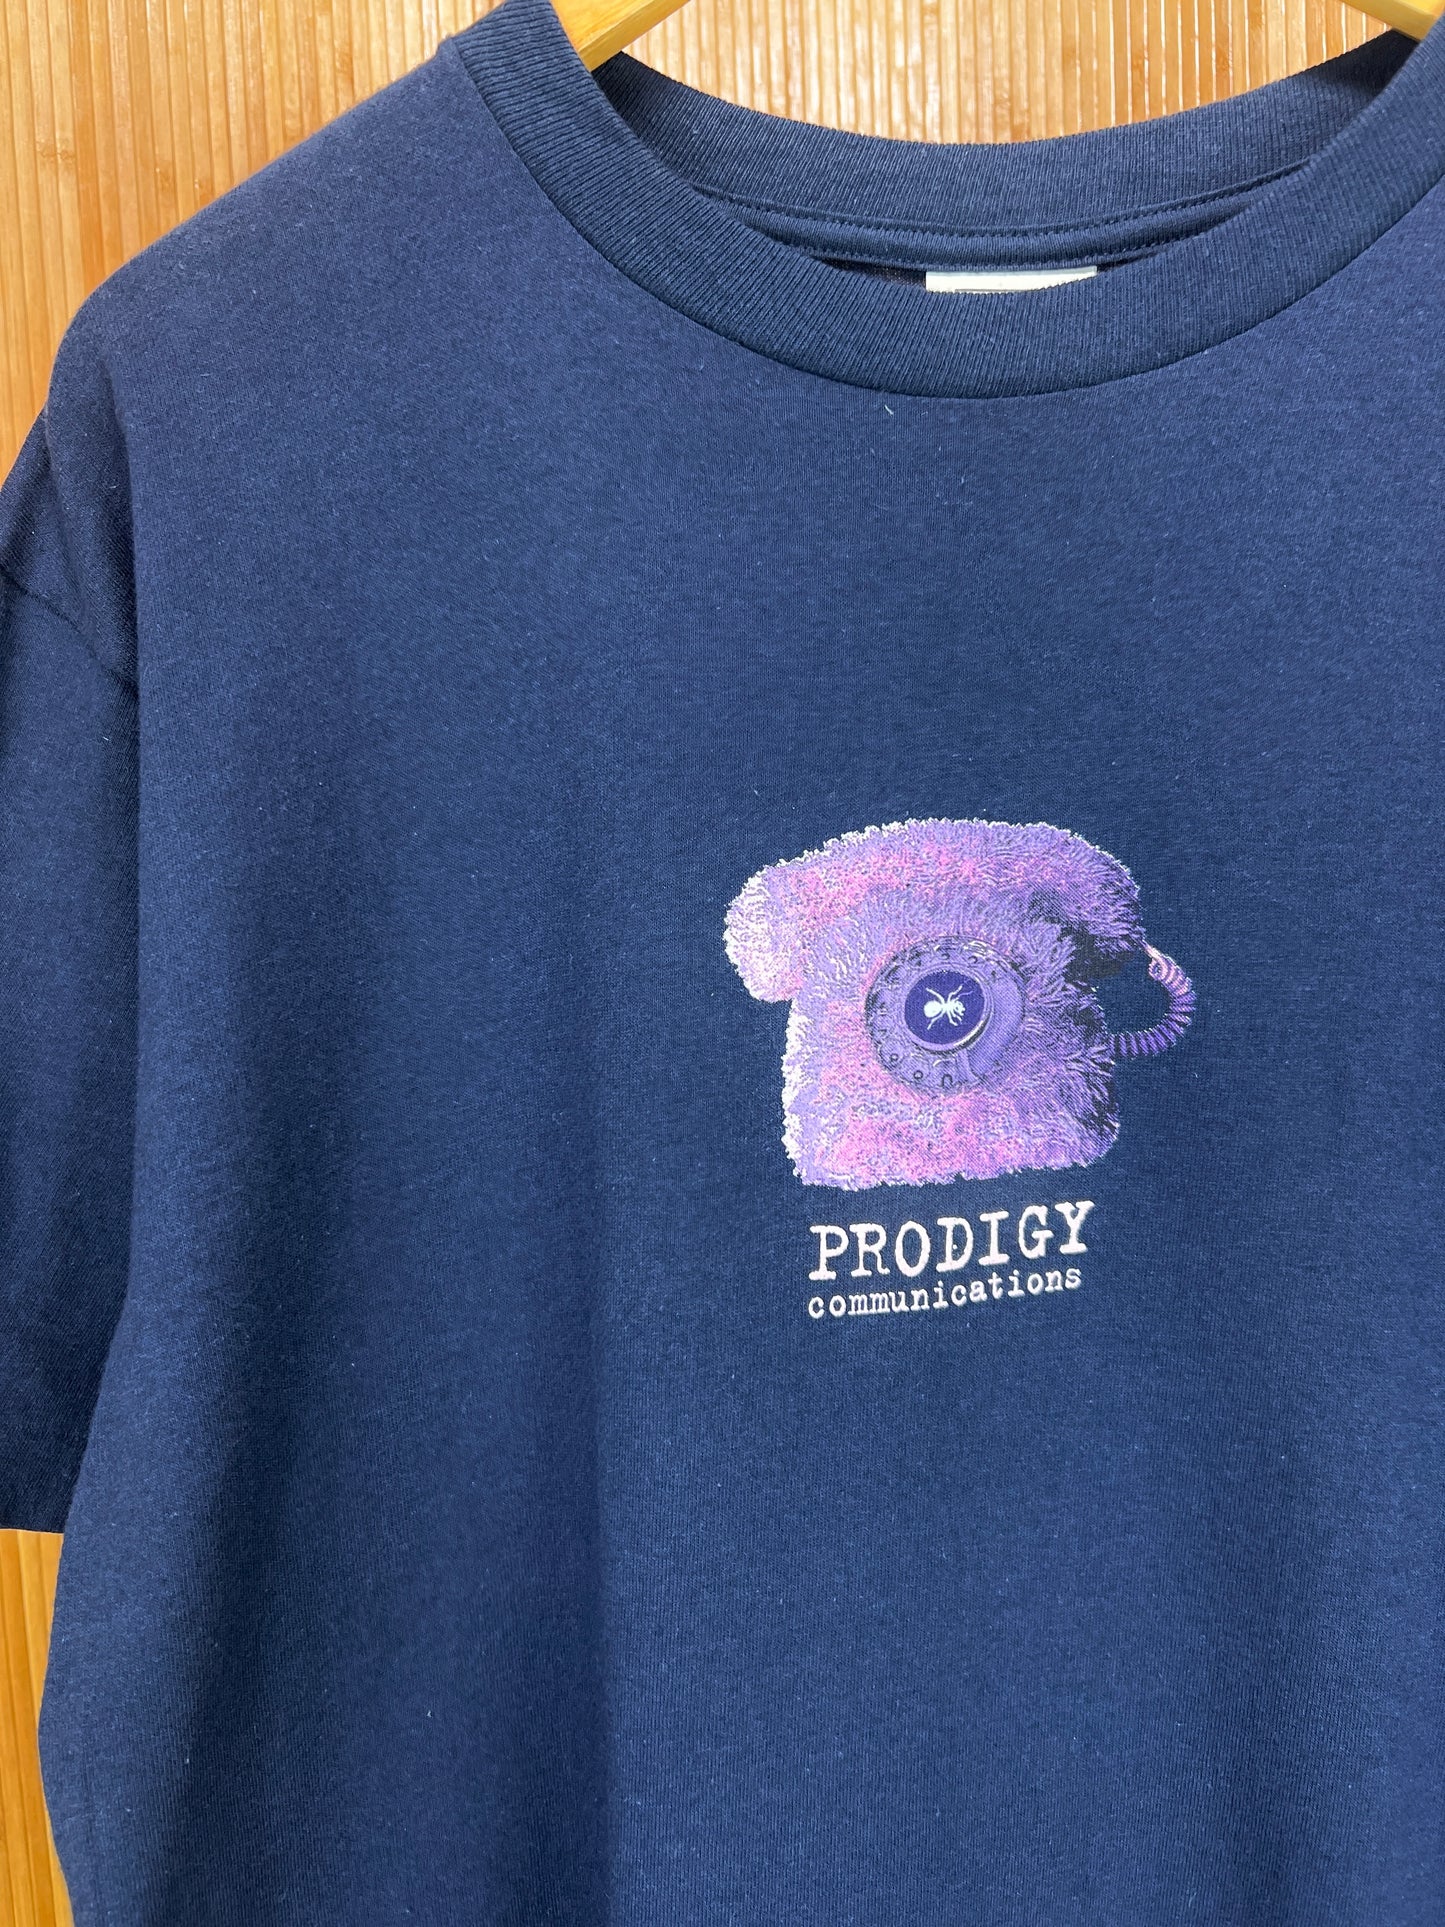 Vintage 90s Prodigy T Shirt - L